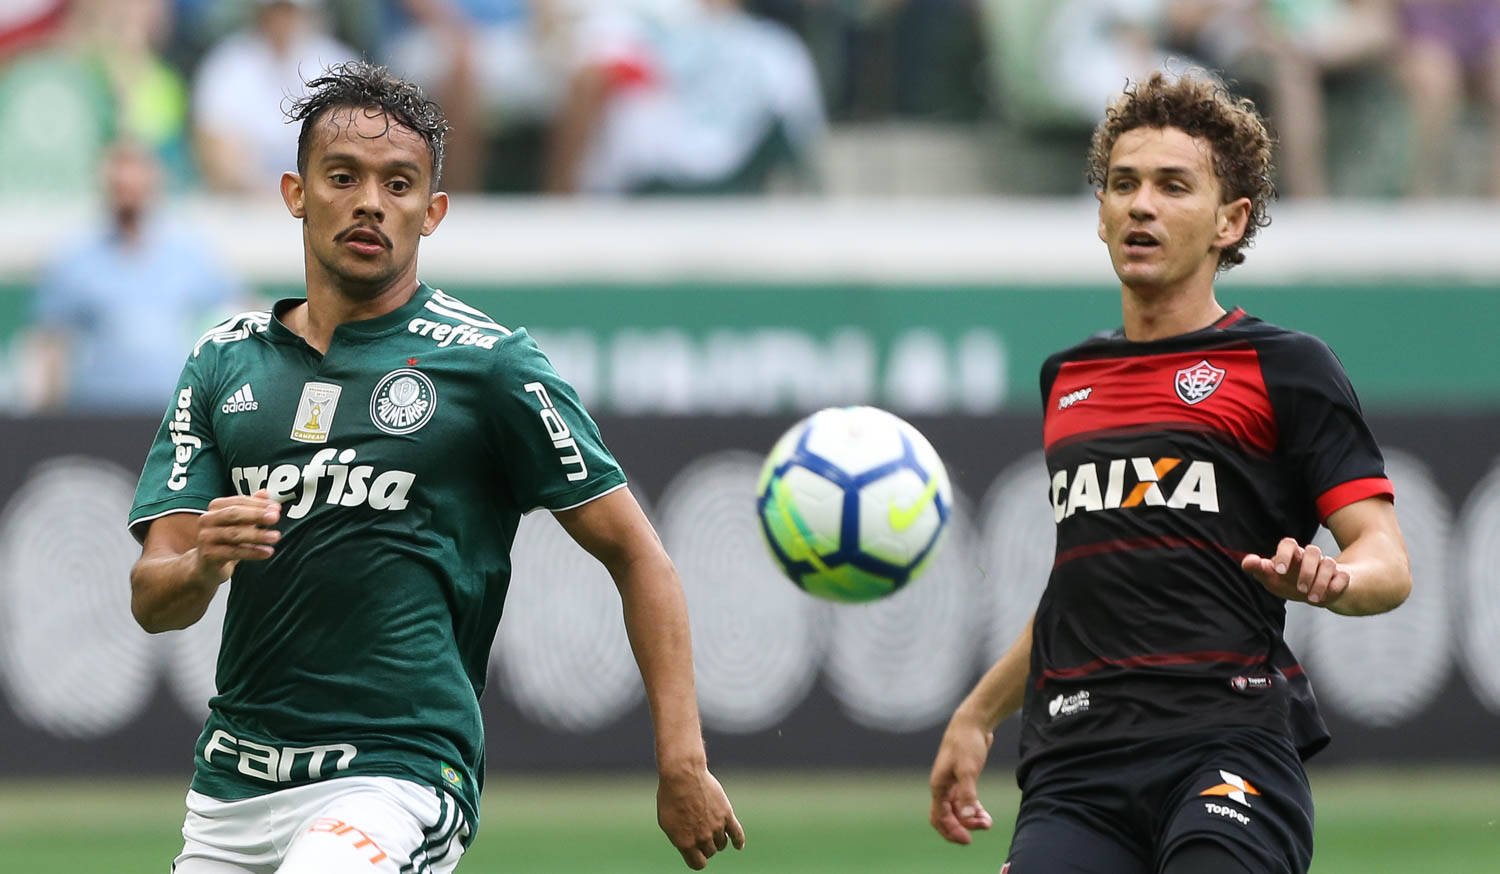 Foto: Cesar Greco/Ag Palmeiras/Divulgação